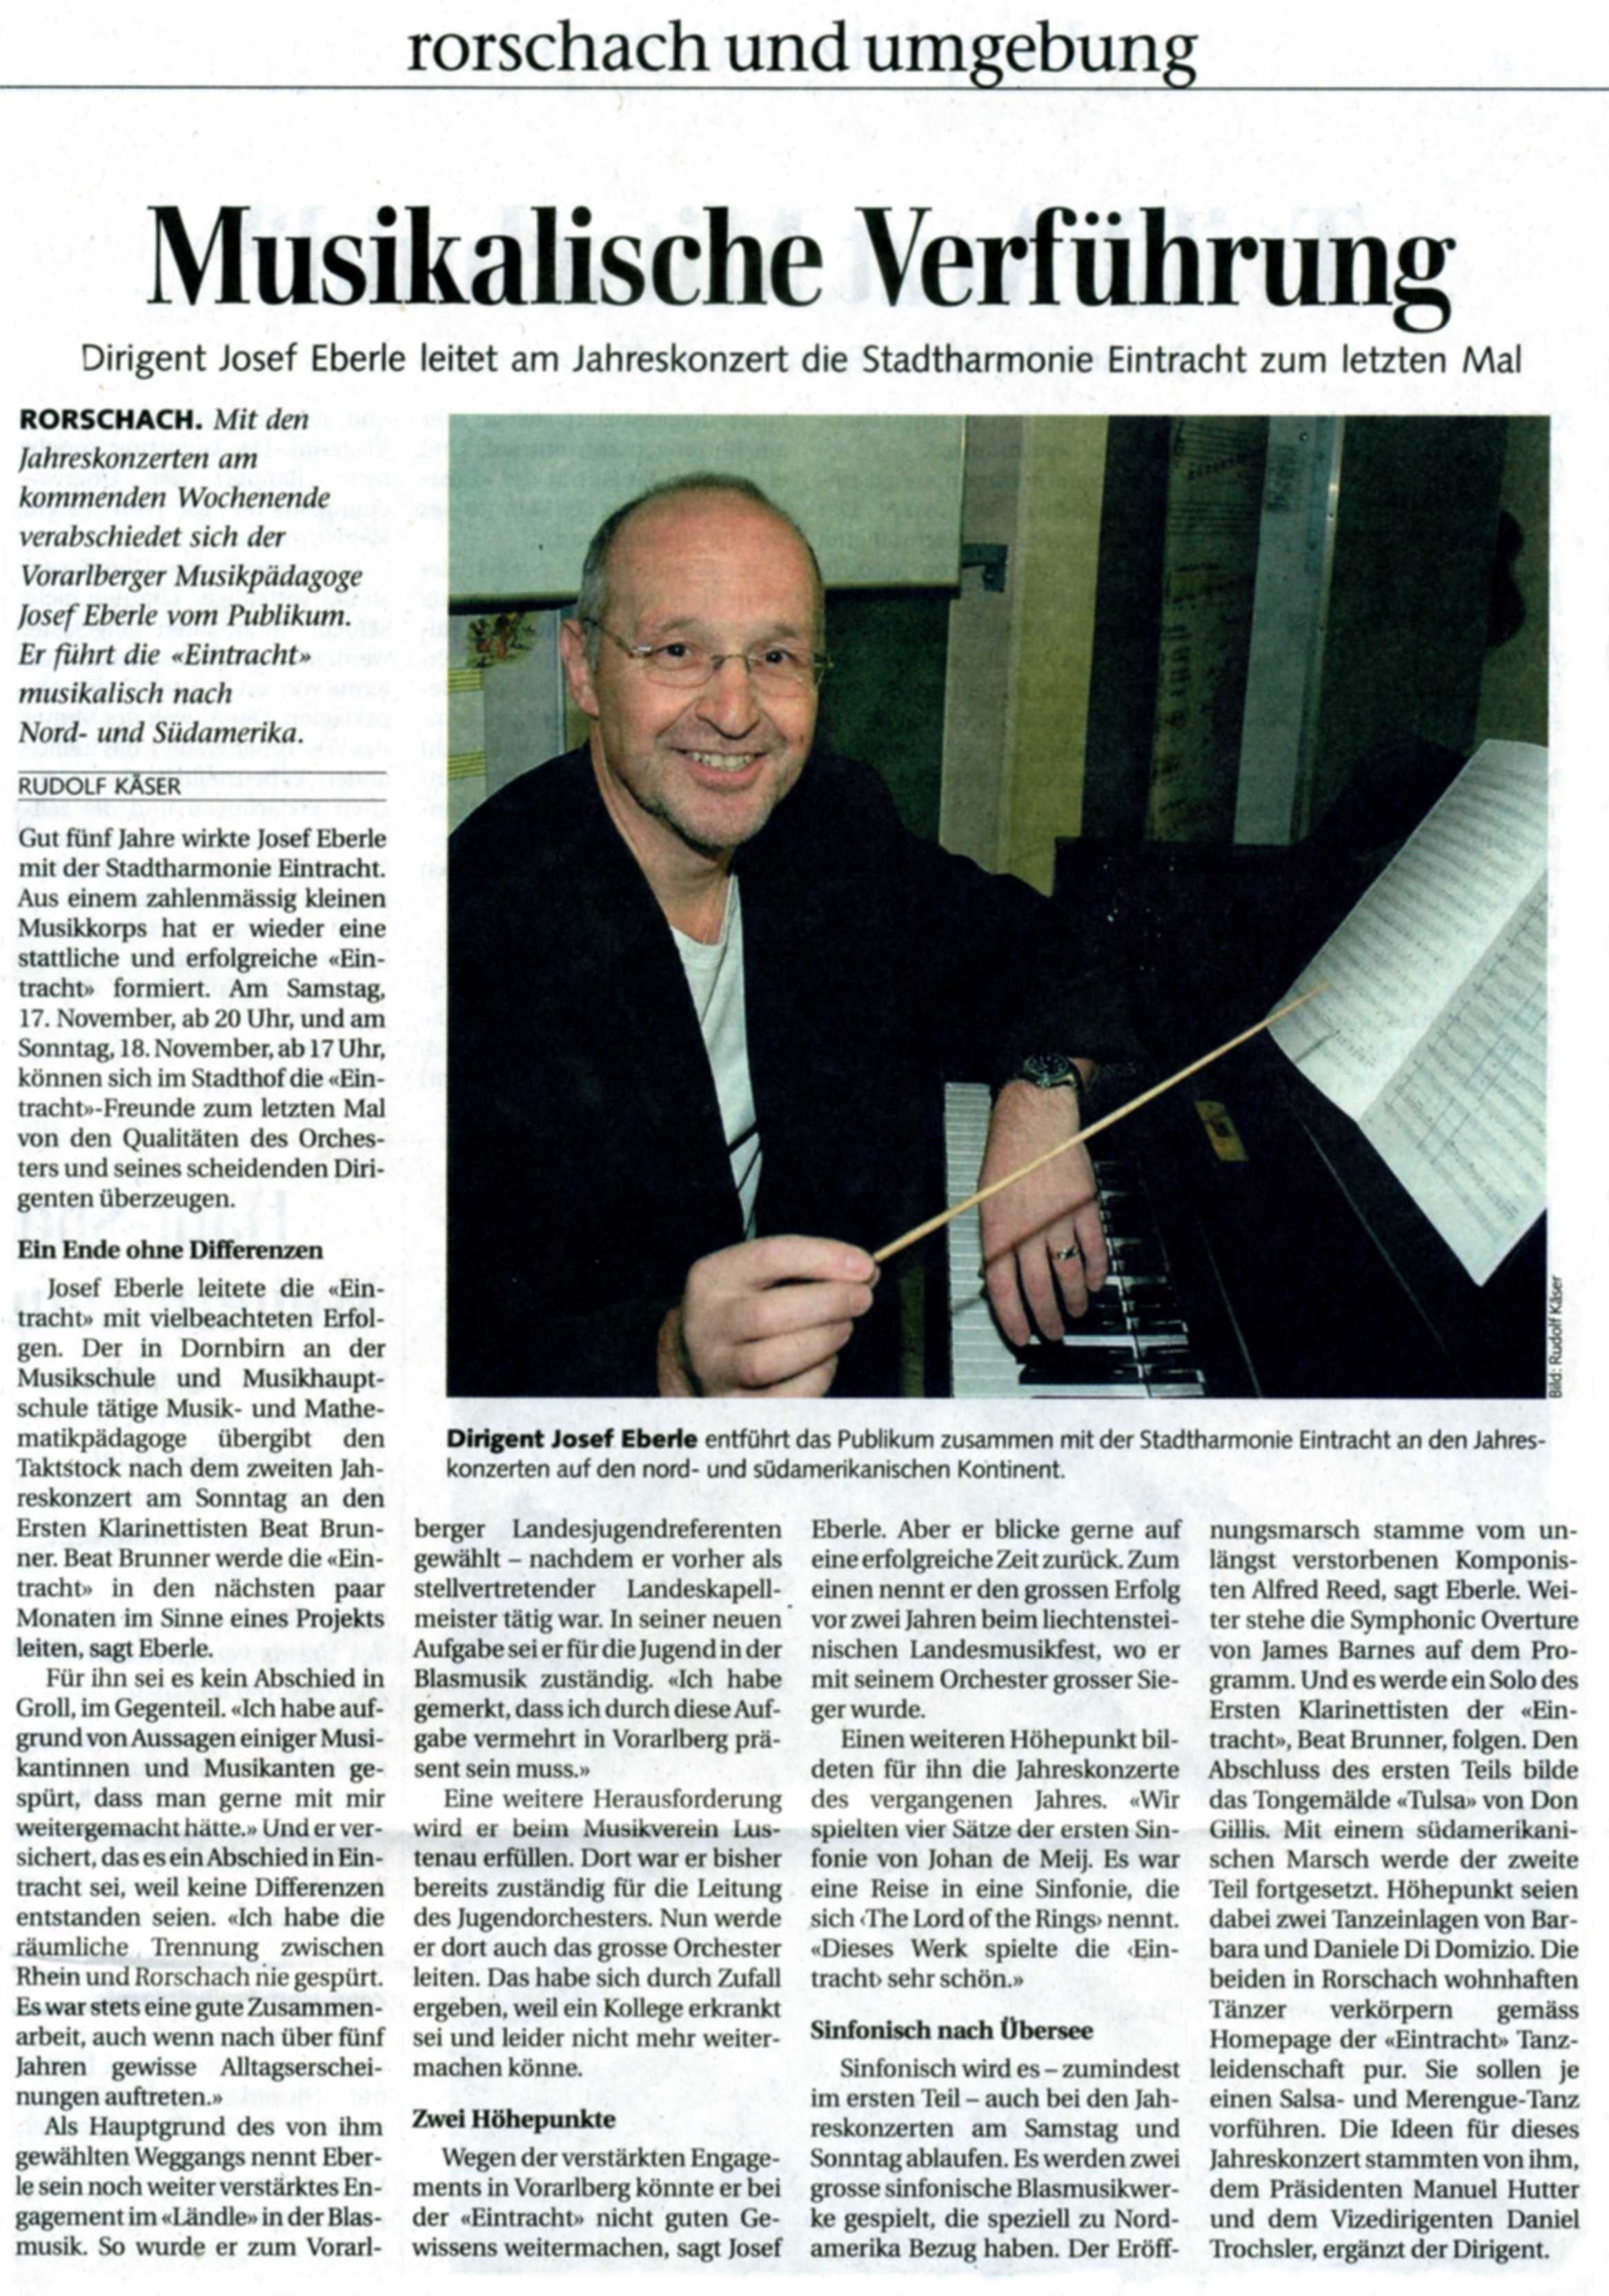 Interview von Rudolf Käser mit dem abtretenden Dirigenten Josef Eberle.